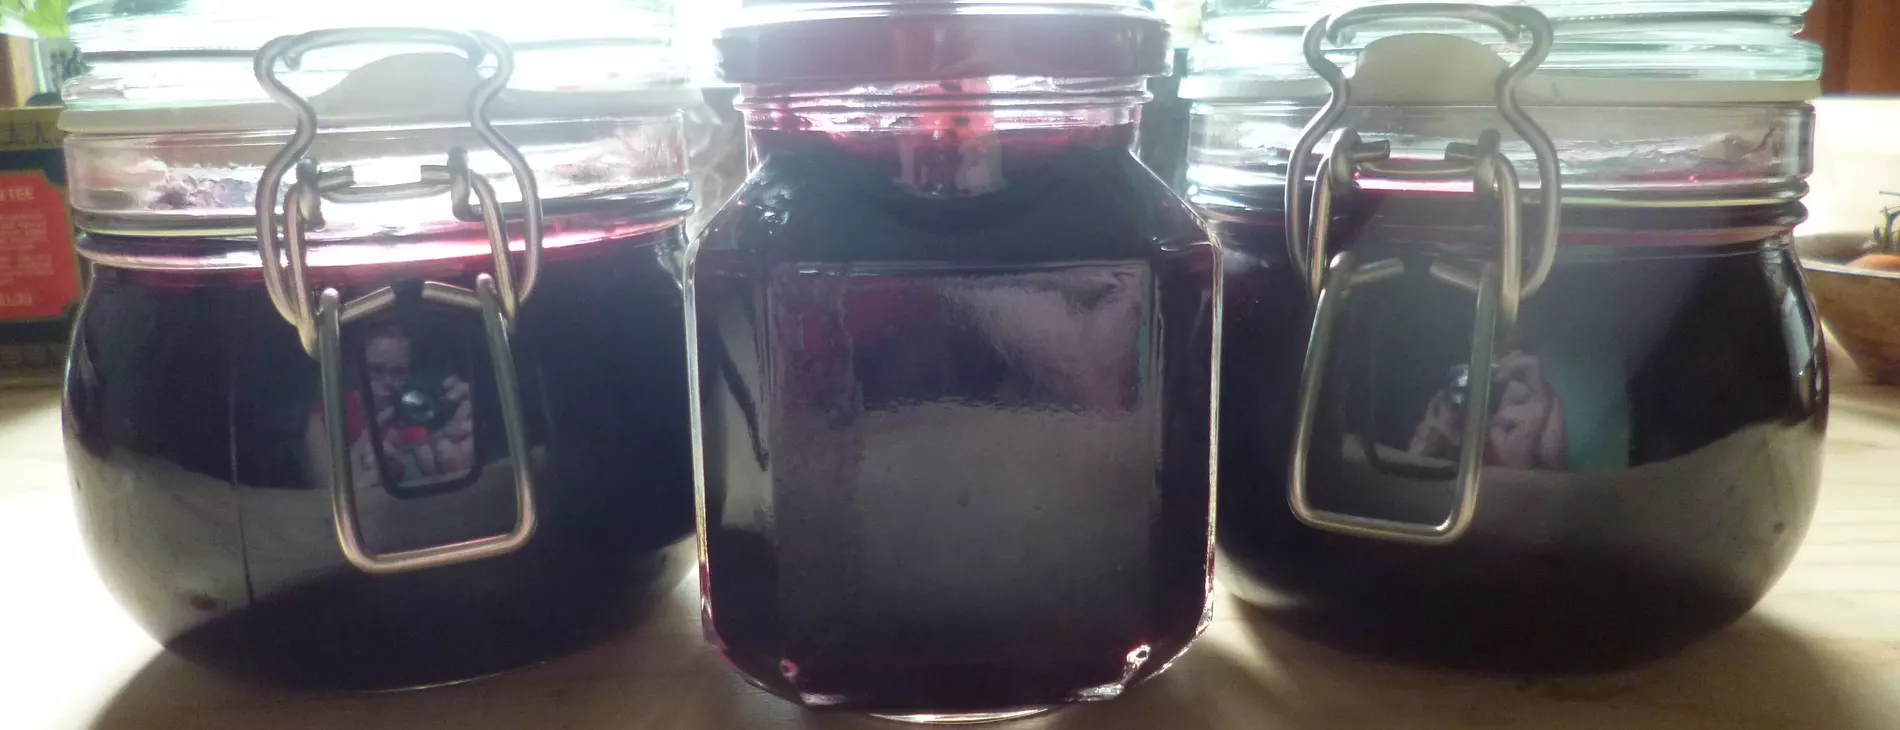 Black currant jam